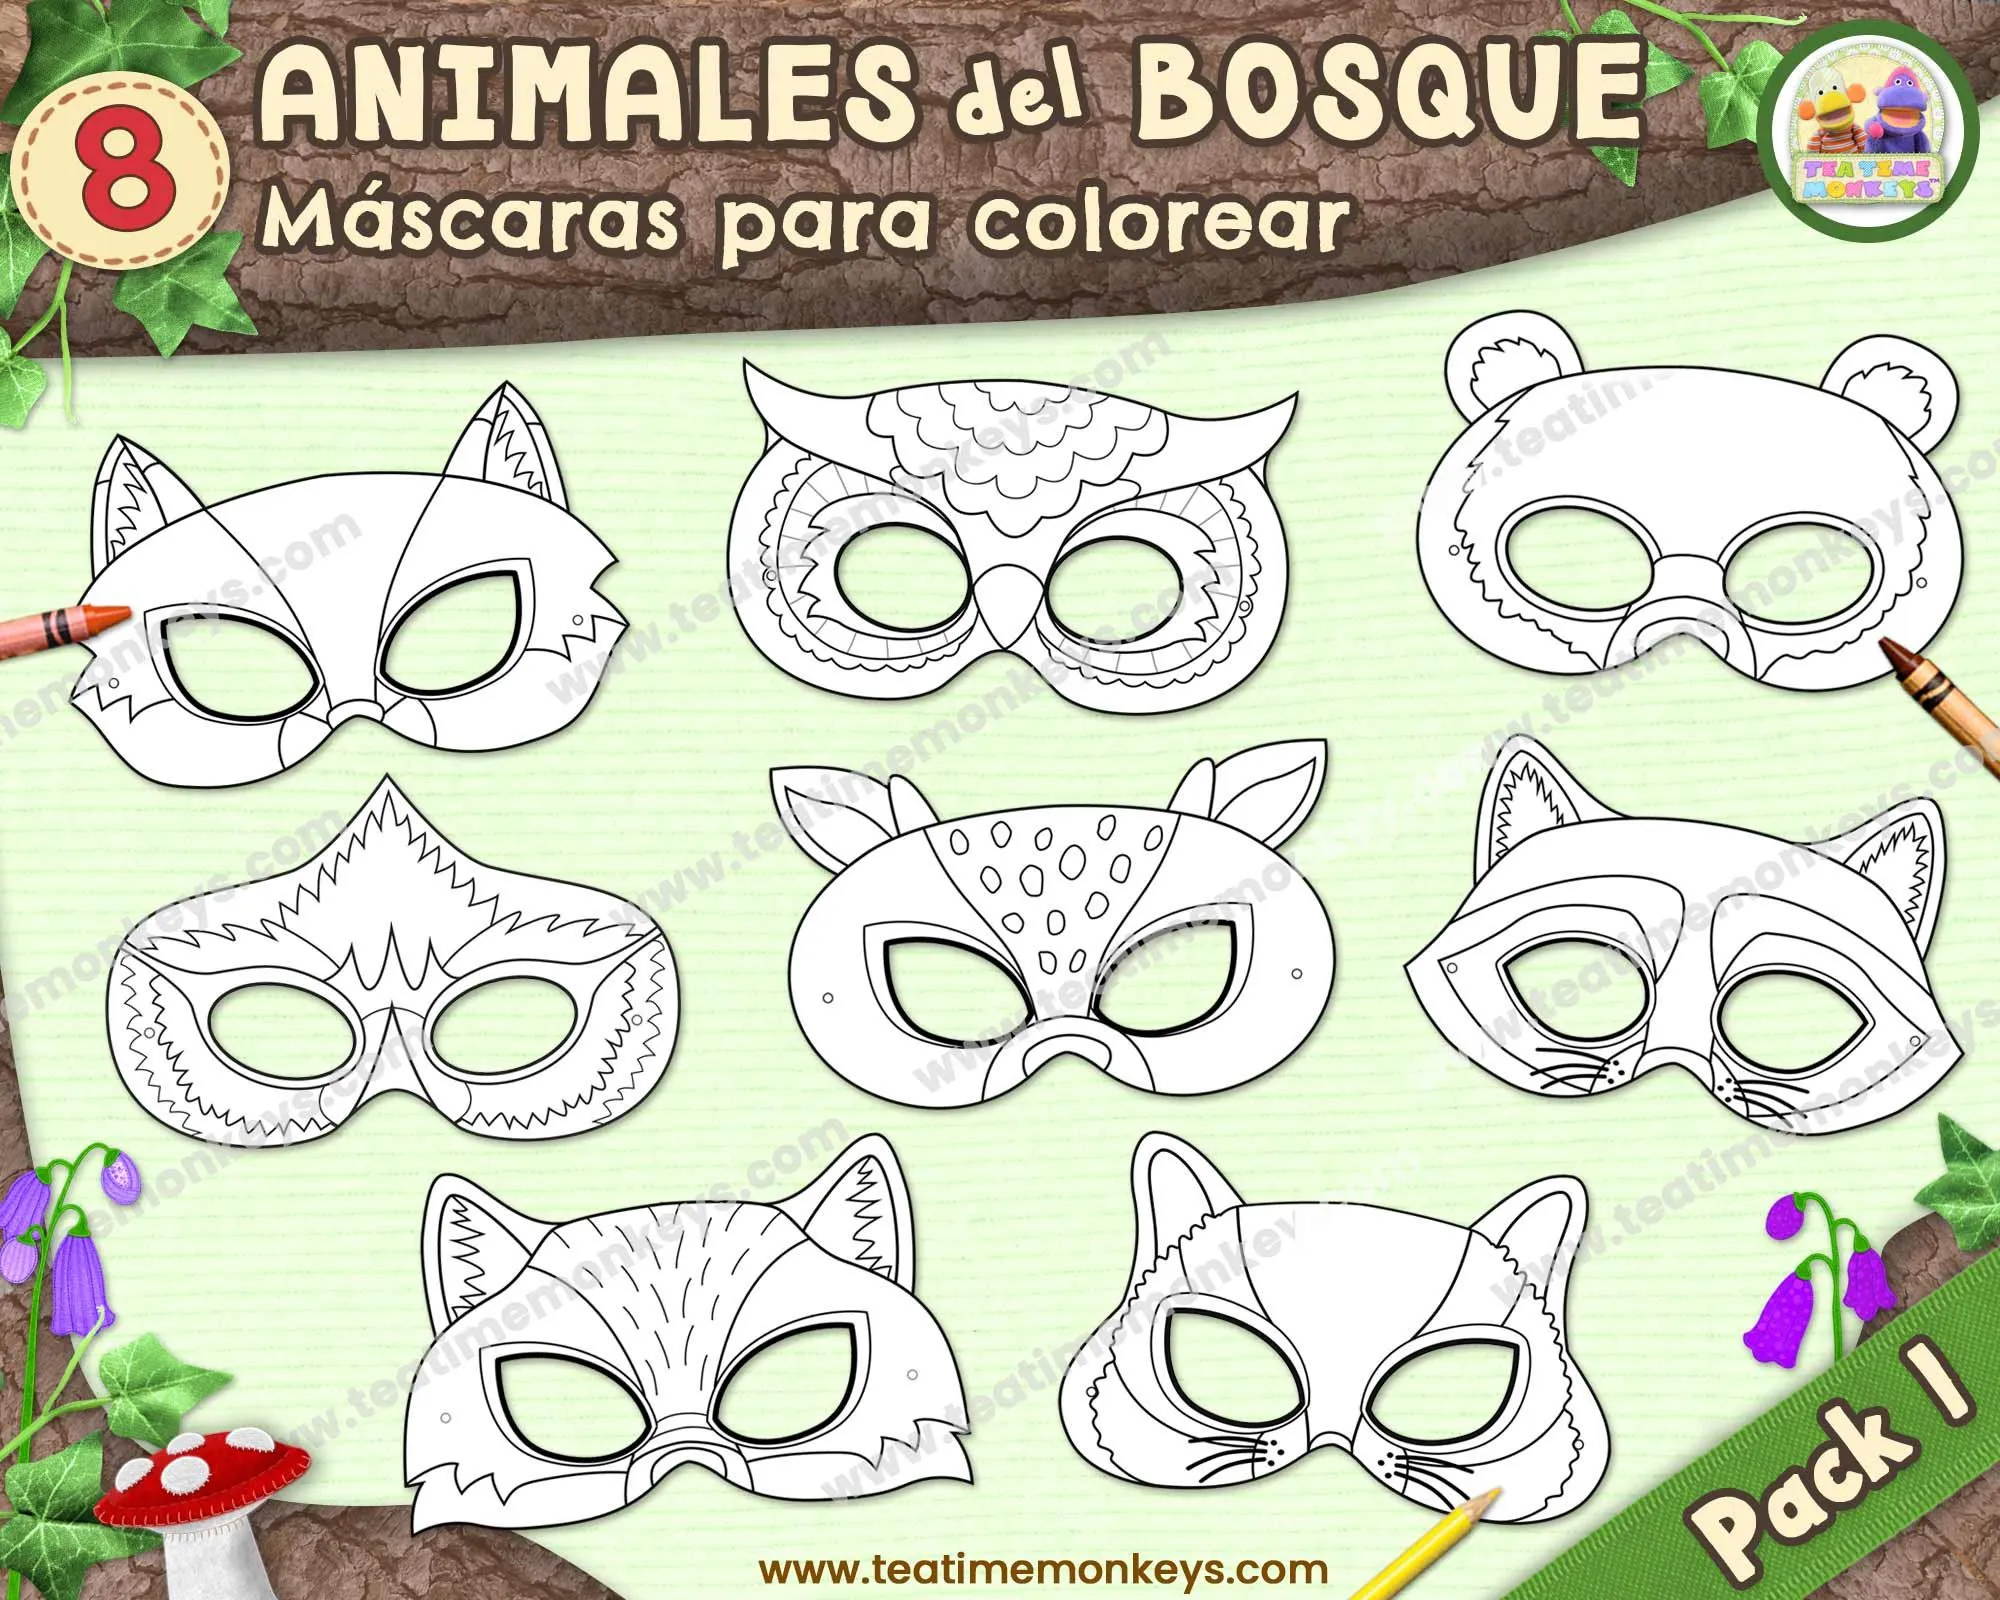 Máscara para colorear - Etsy México